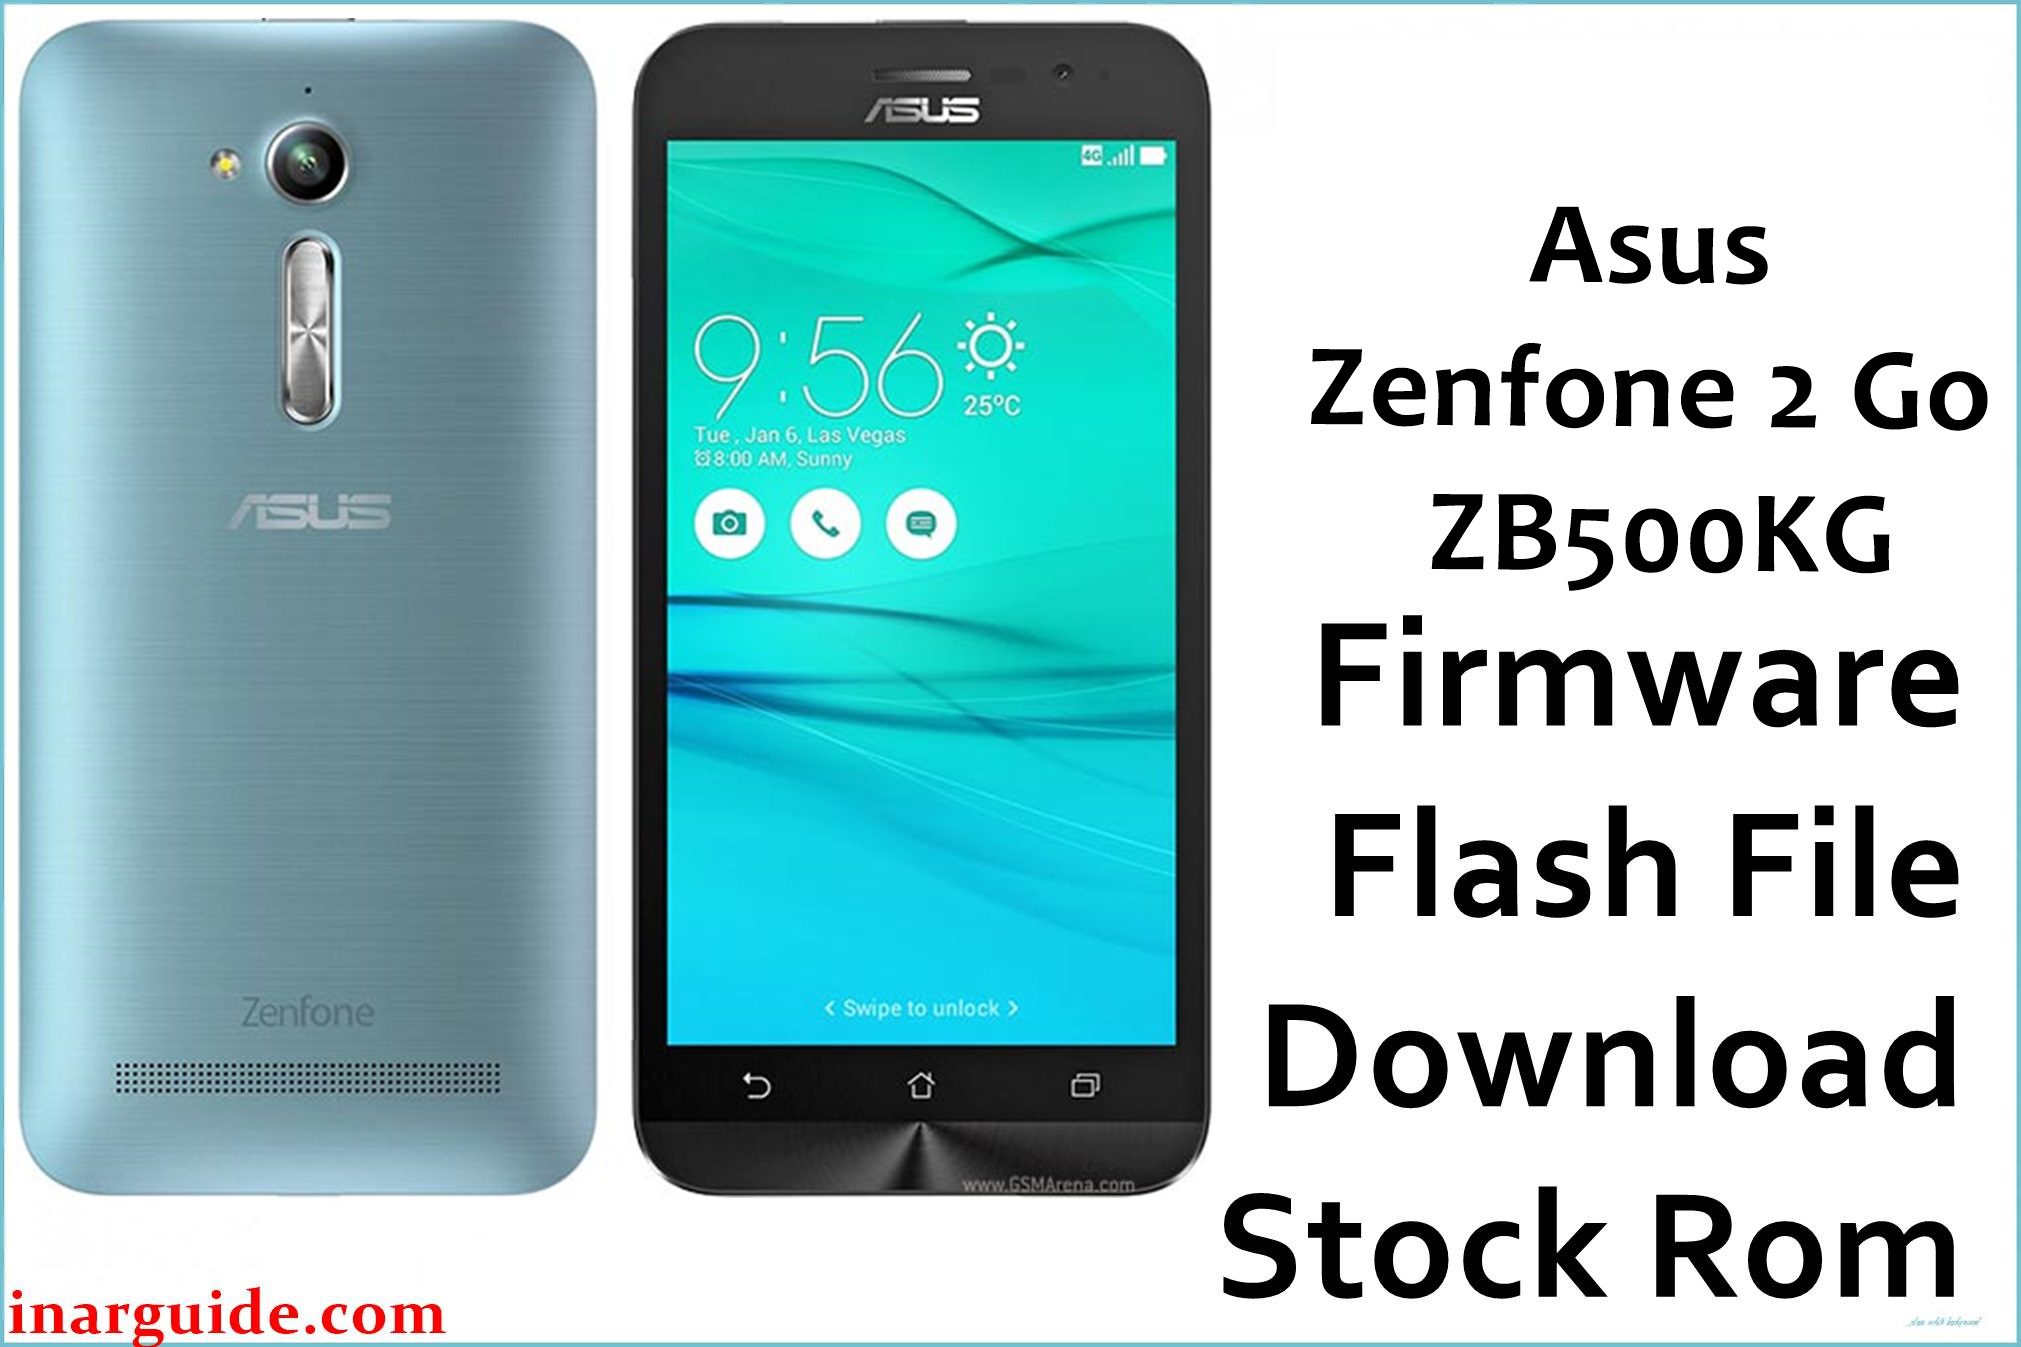 Asus Zenfone 2 Go ZB500KG